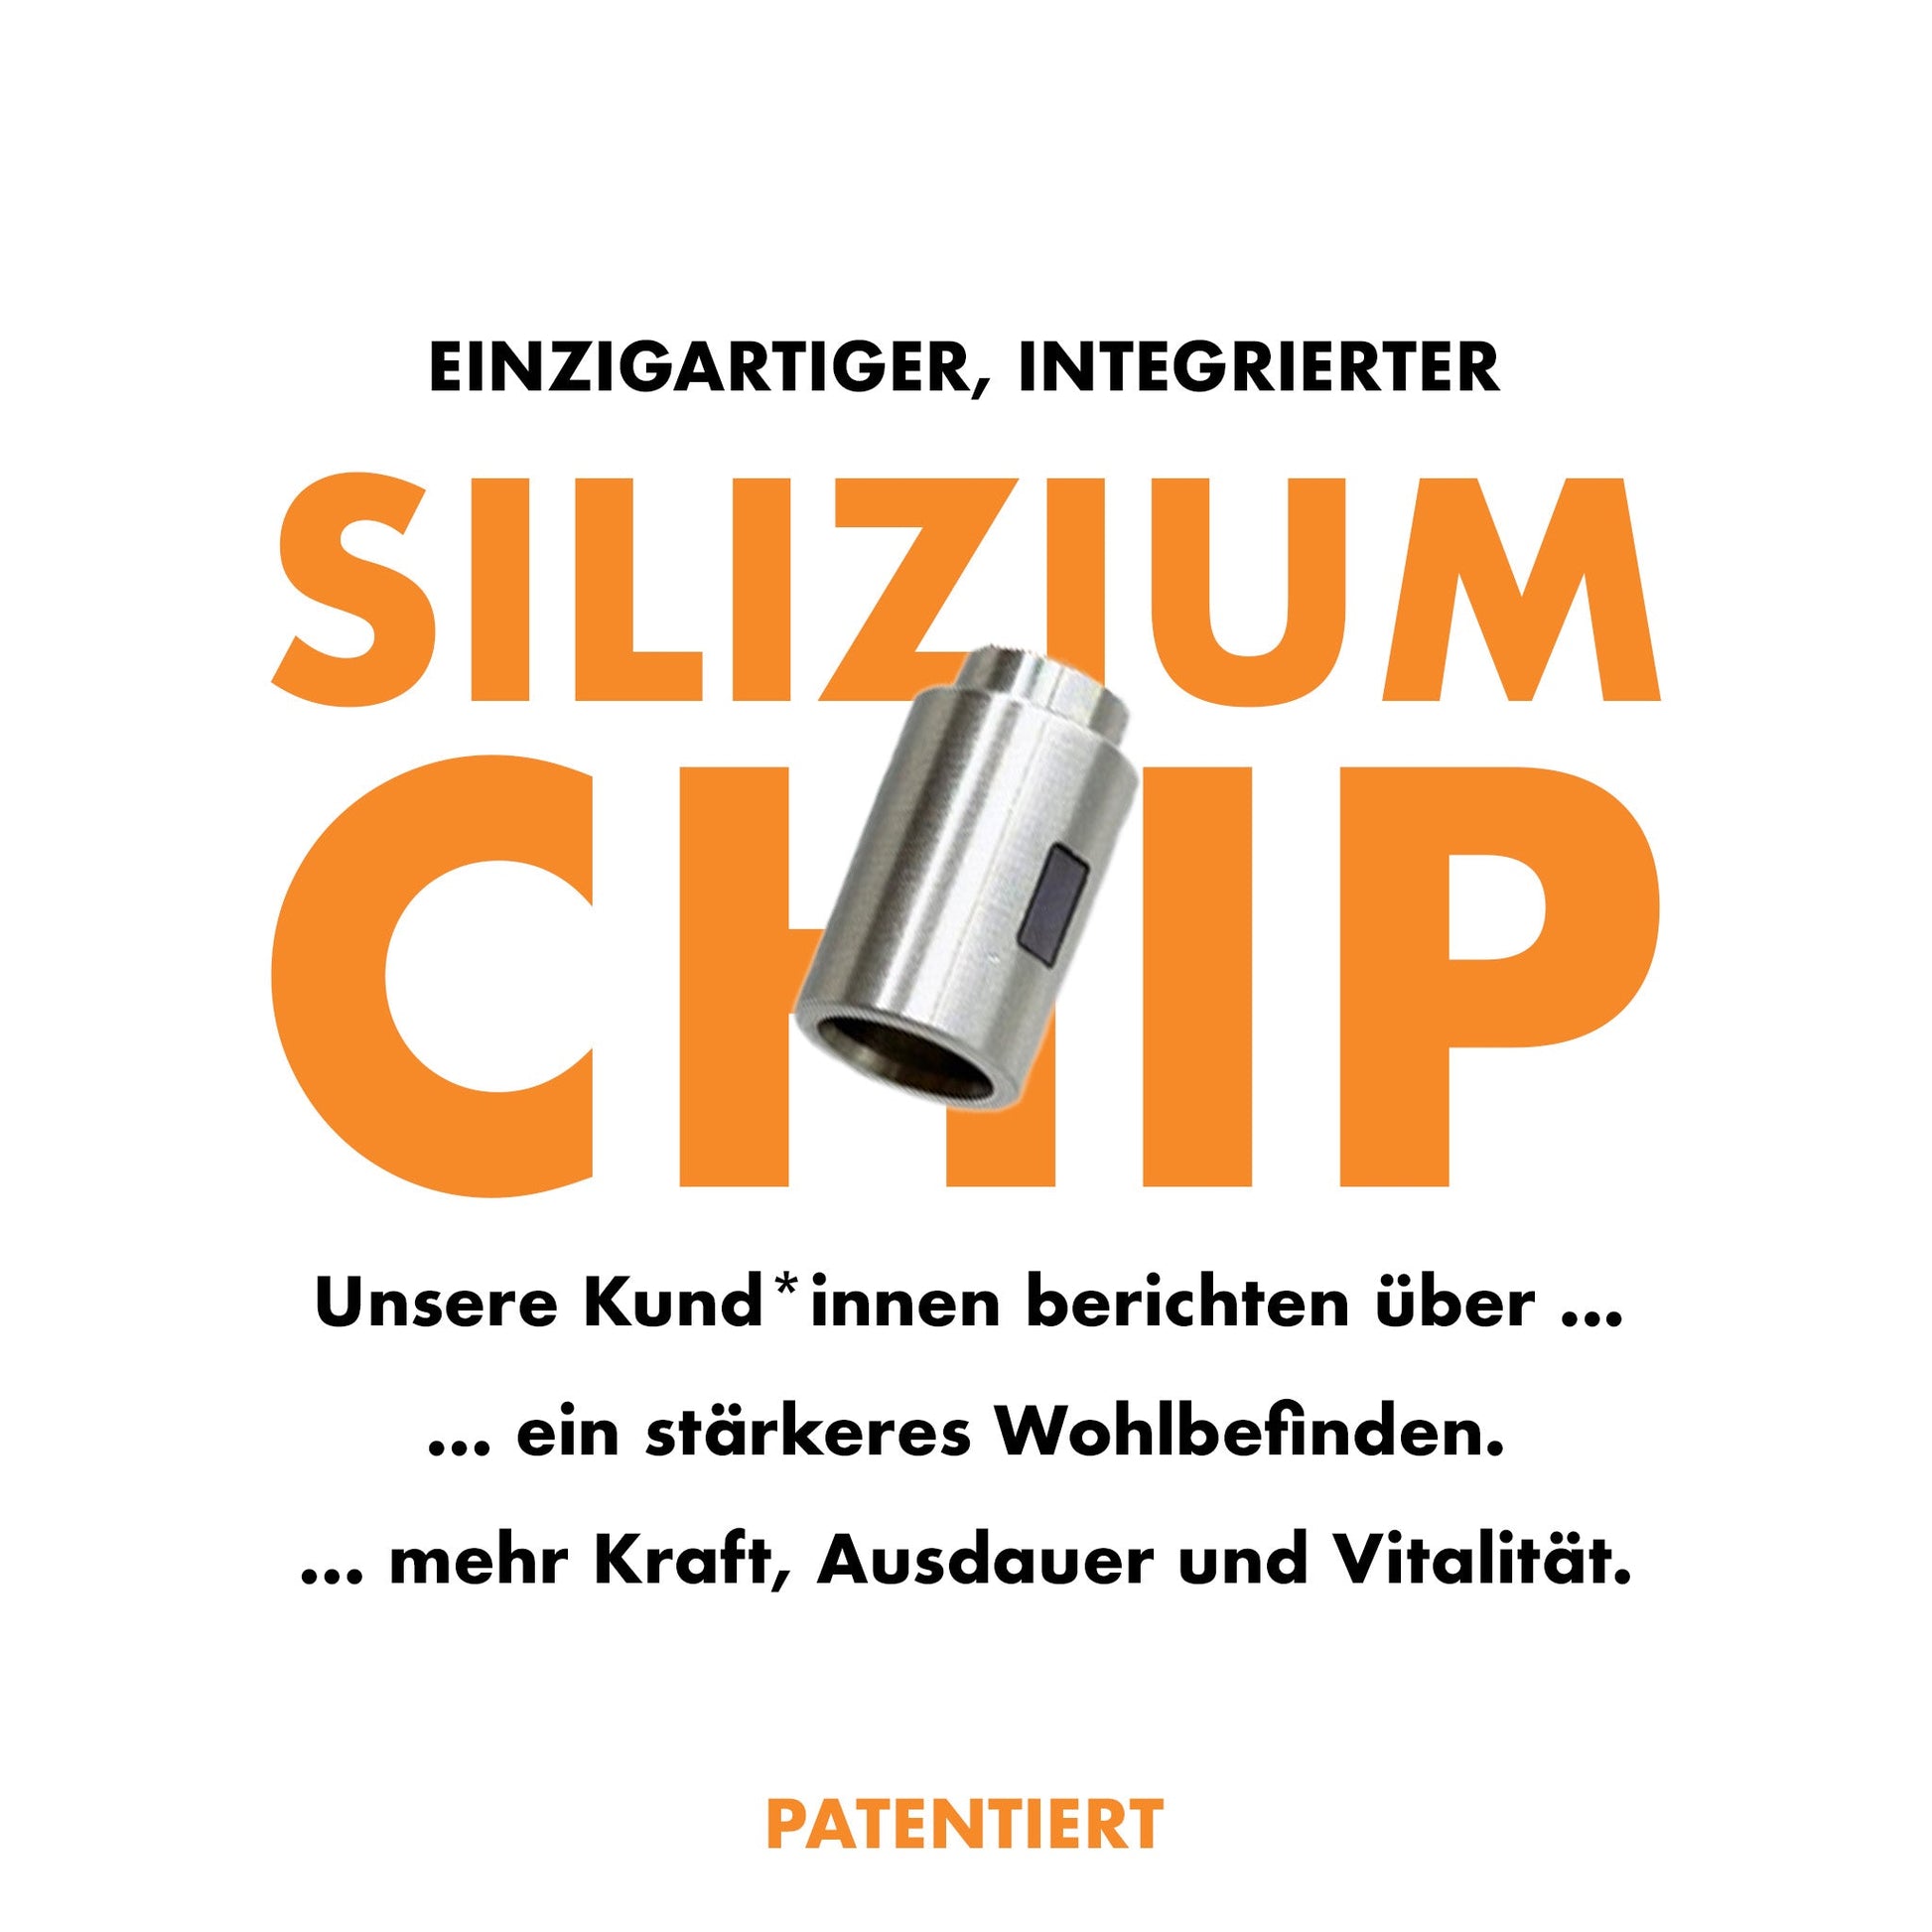 Einzigartiger Silizium Chip für mehr Kraft, Ausdauer und Vitalität